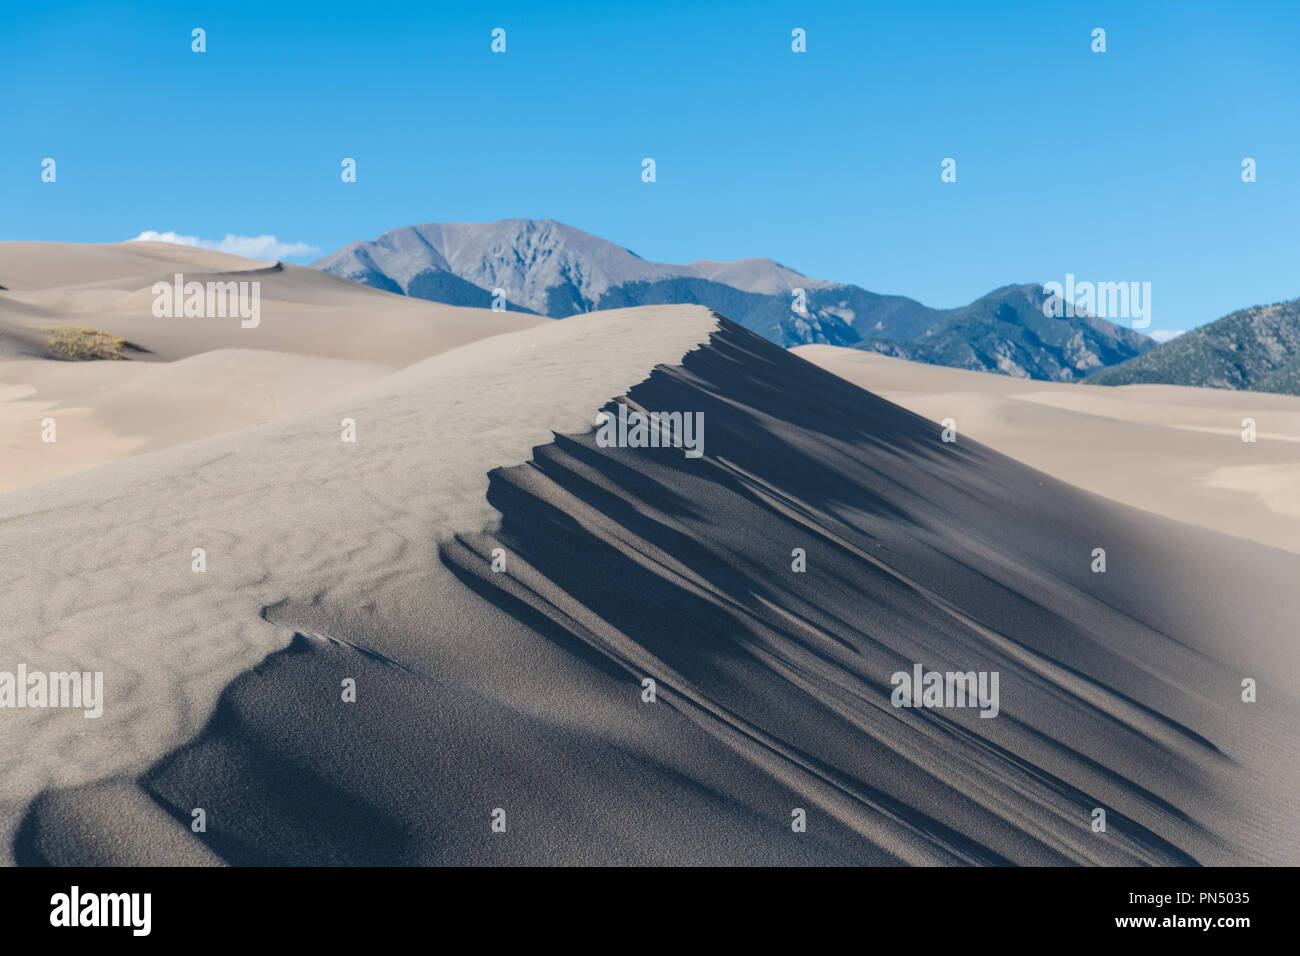 Dunes de sable et des ombres dramatiques et textures vers les montagnes Rocheuses, à Great Sand Dunes National Park, Colorado Banque D'Images